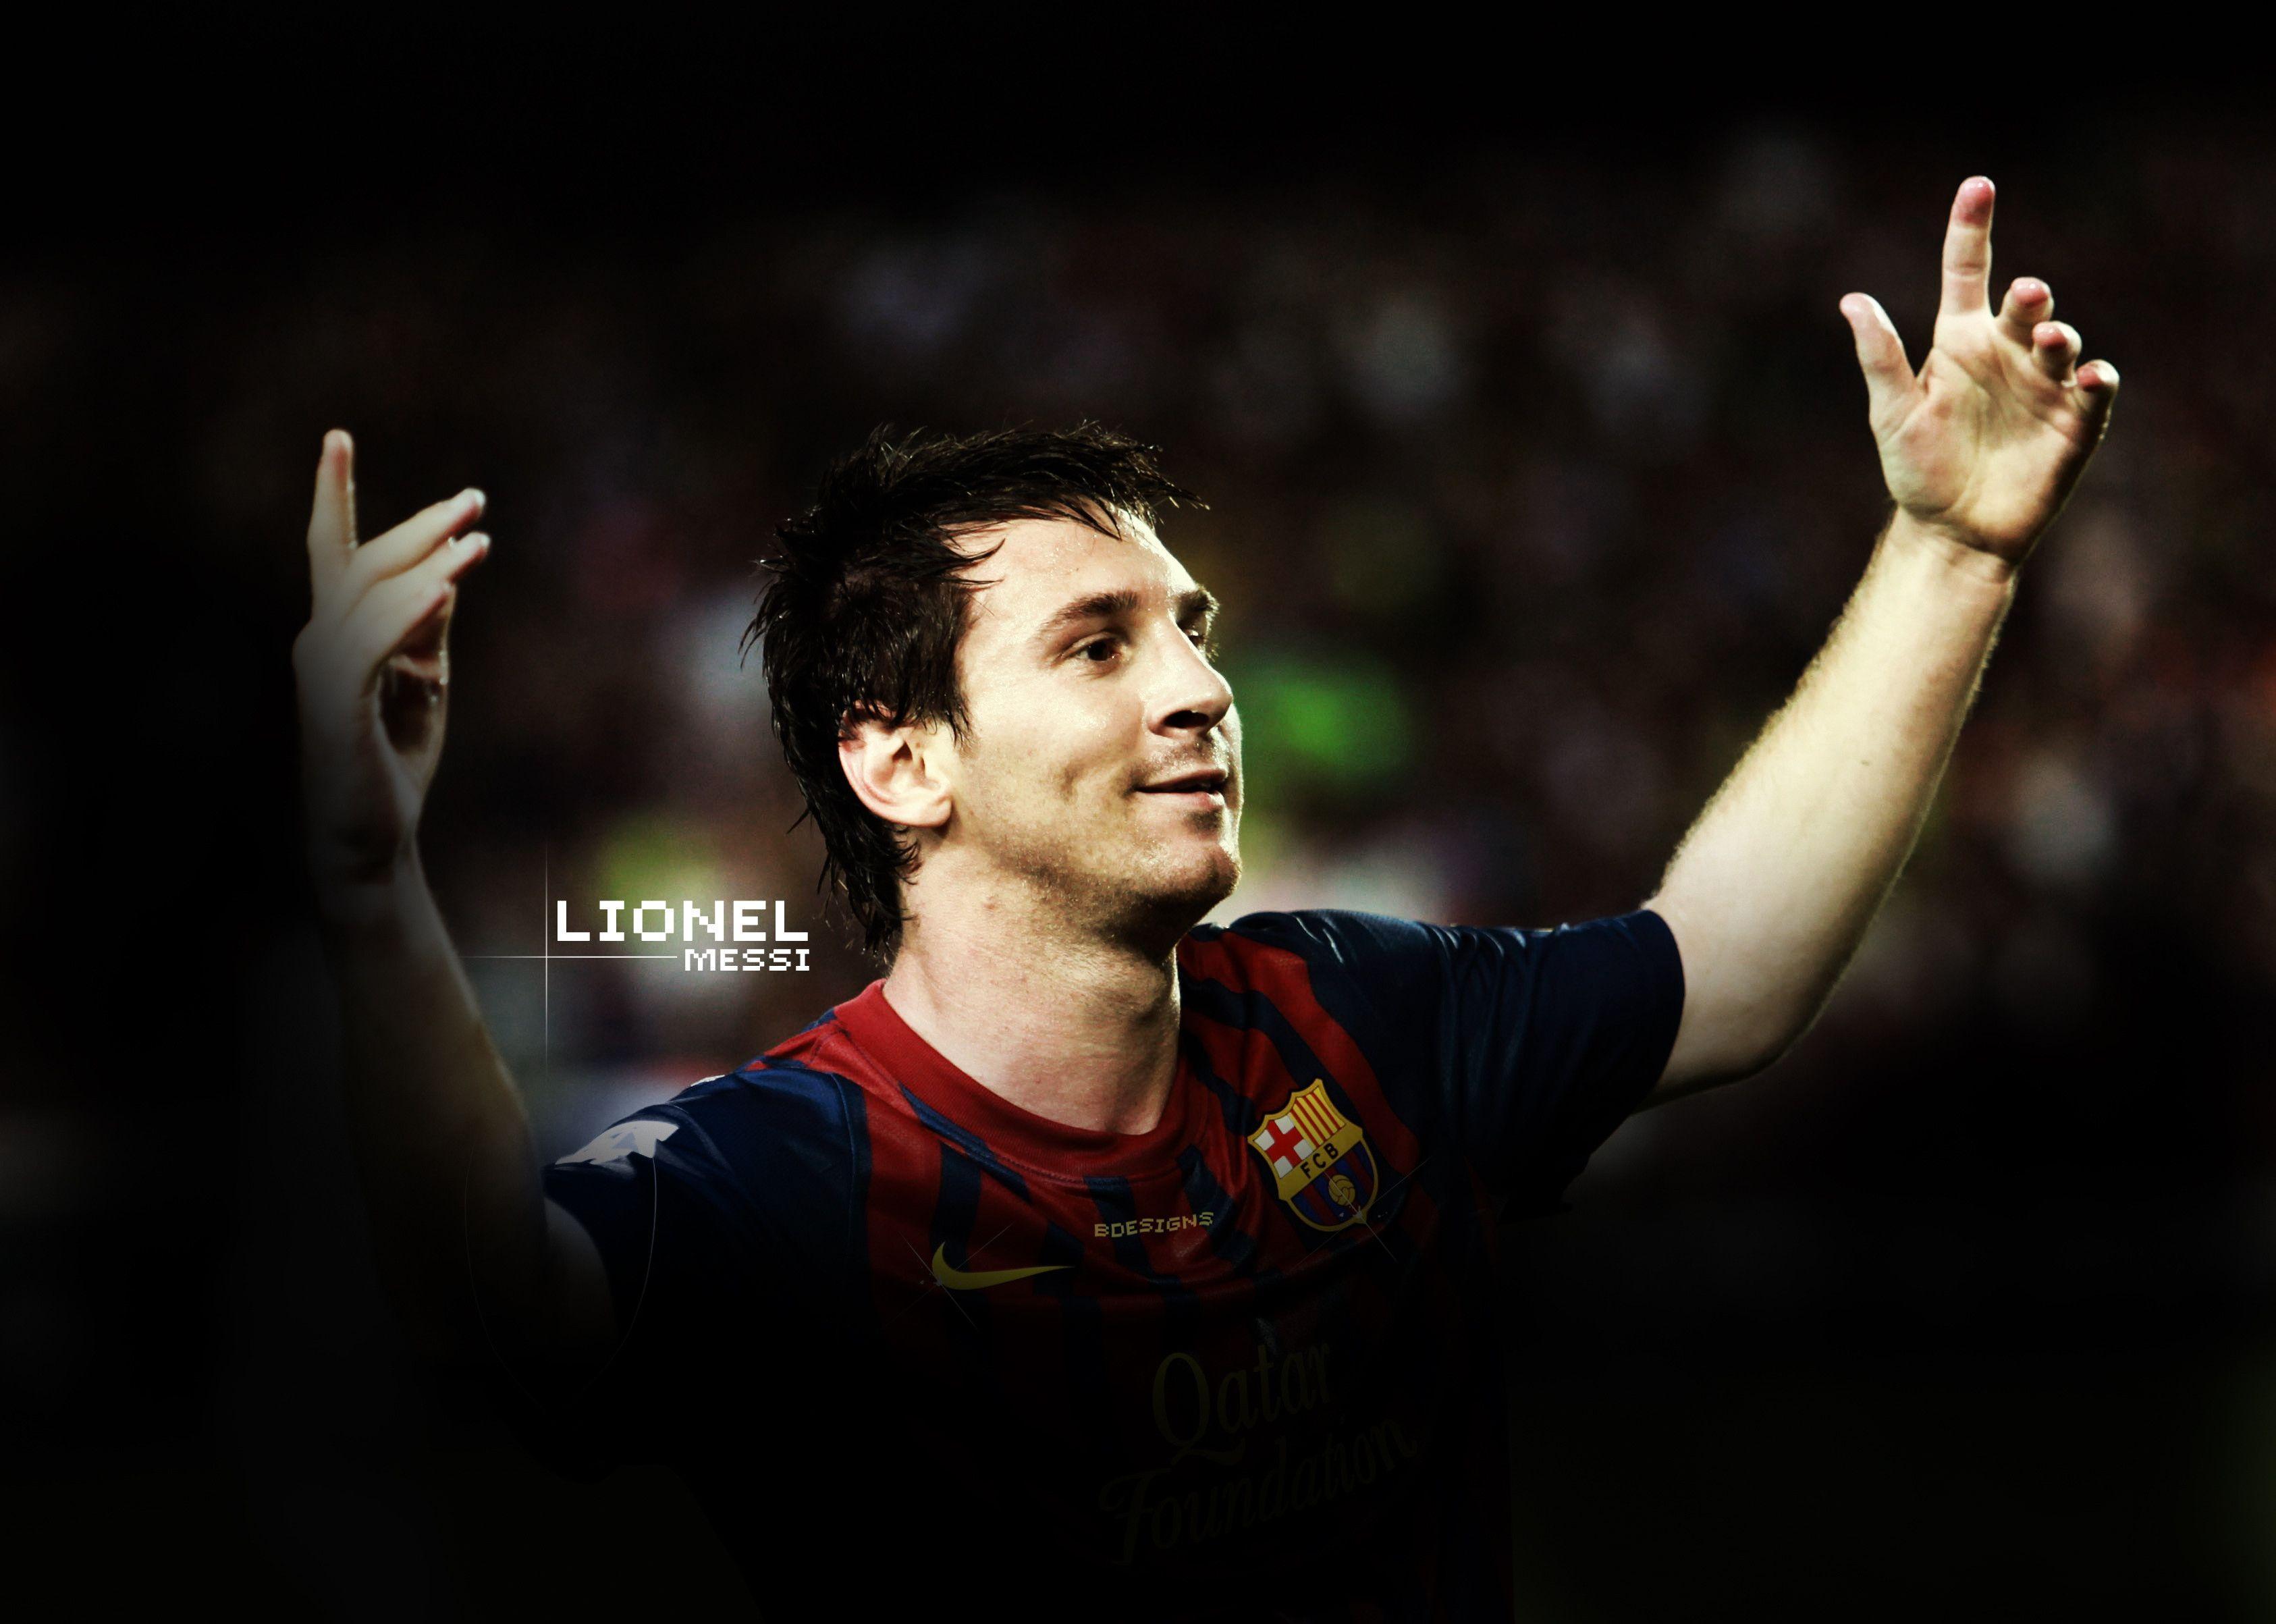 Lionel Messi Wallpaper. Black HD Wallpaper